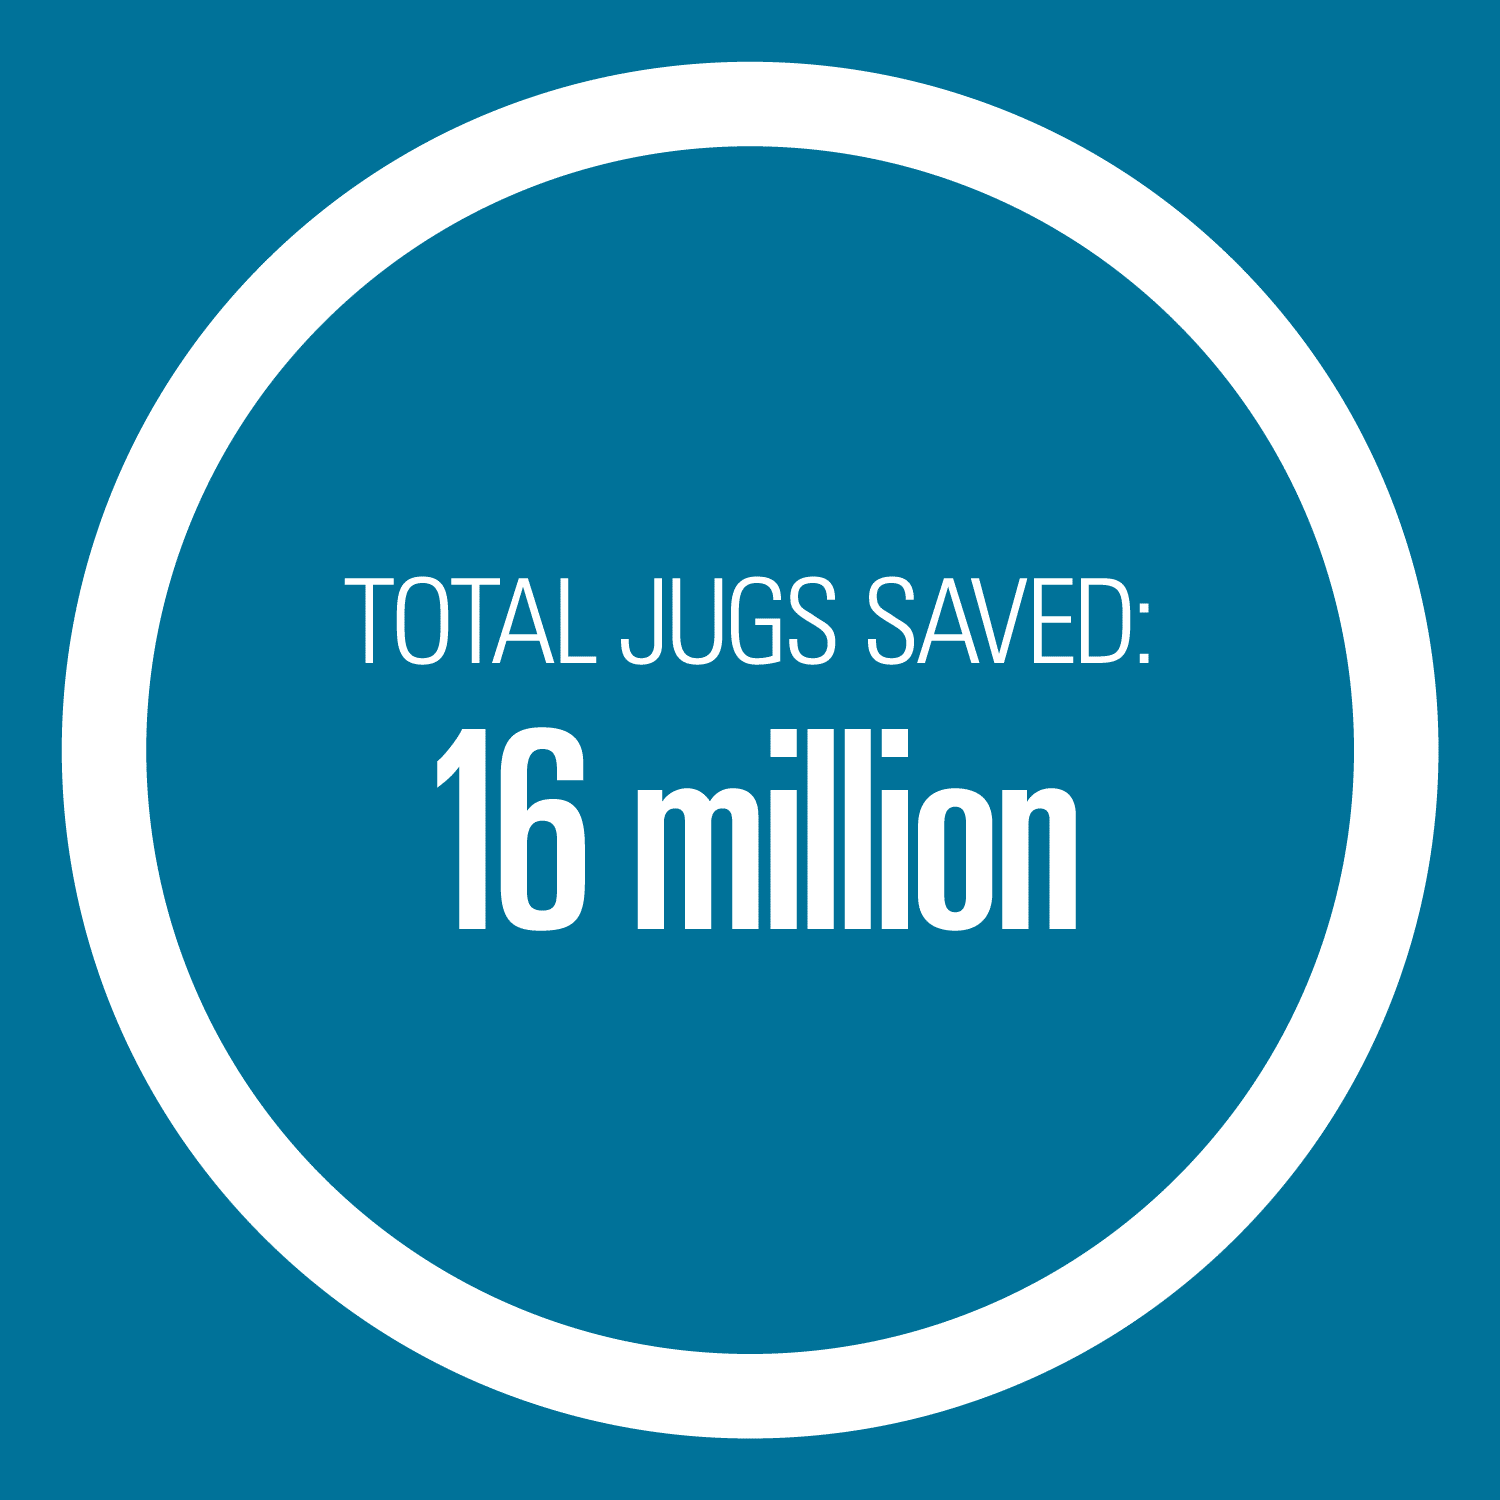 Total jugs saved - 16 million